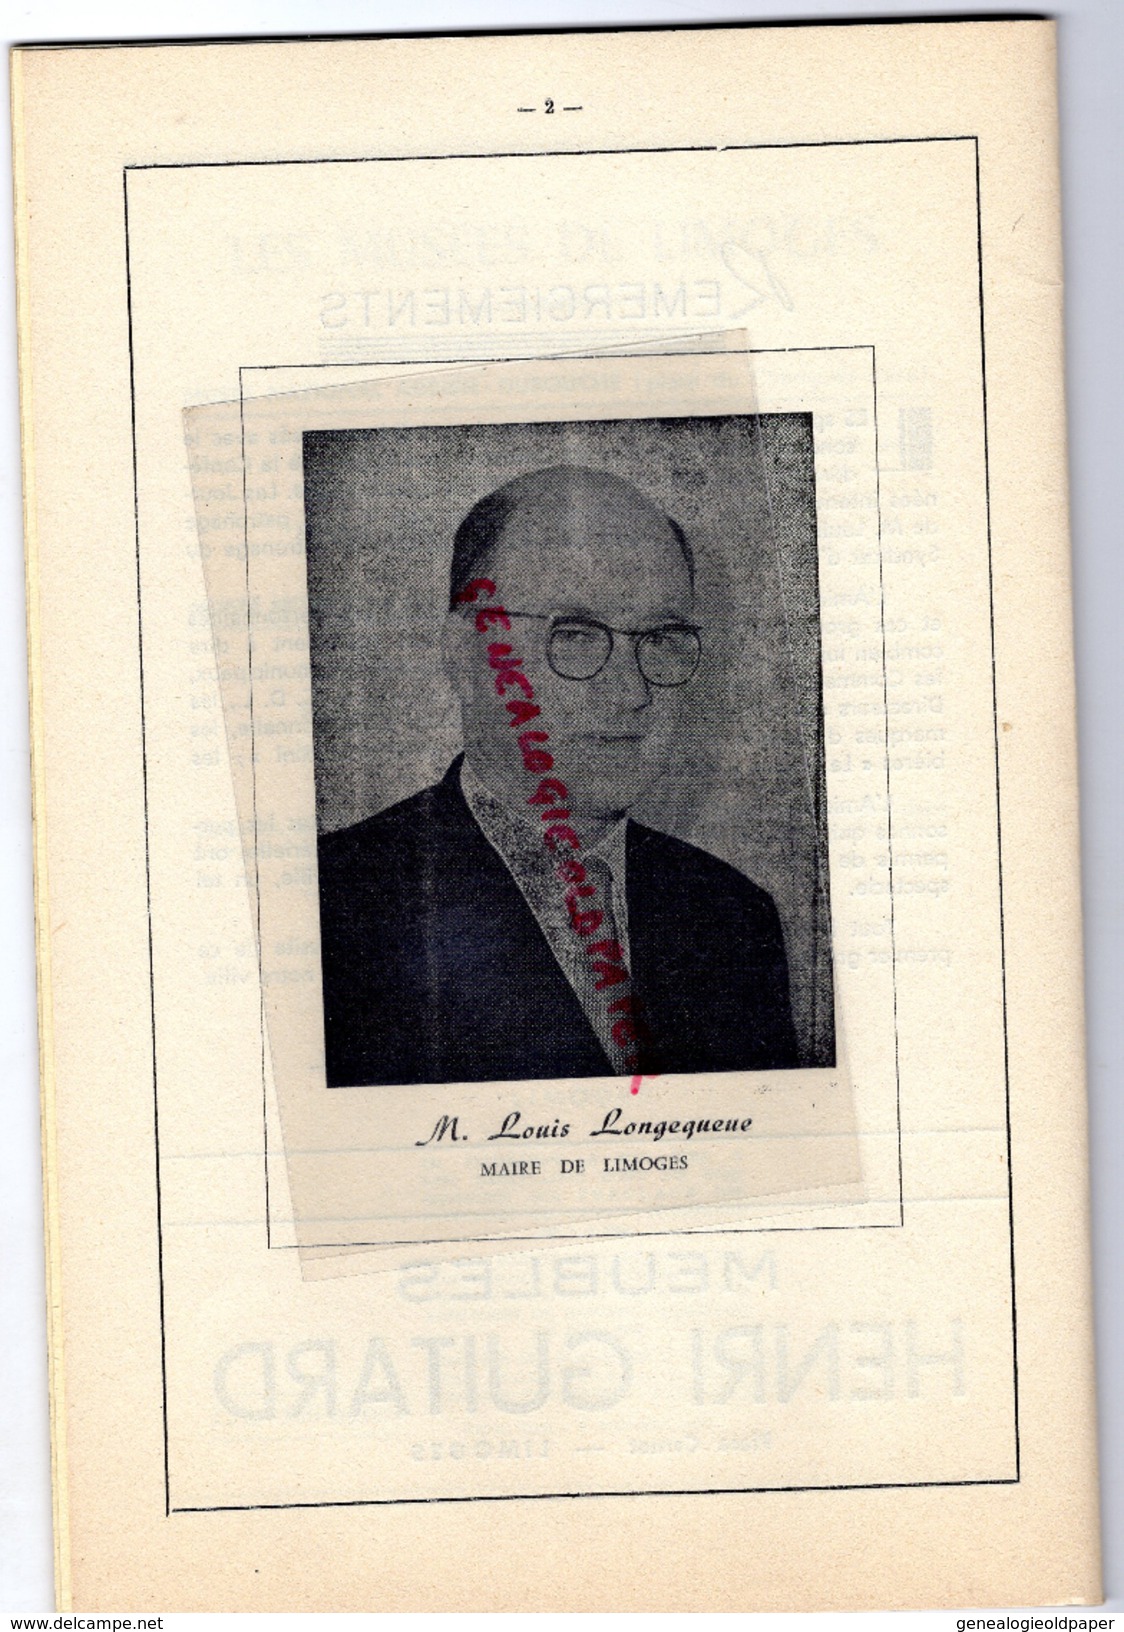 87 - LIMOGES - FOLKLORE 1957-LONGEQUEUE- AURILLAC-COLMAR-ST PE DE LEREN-NIMES-CHAROLLES-MALINES-QUIMPERLE-BAYONNE - Documents Historiques